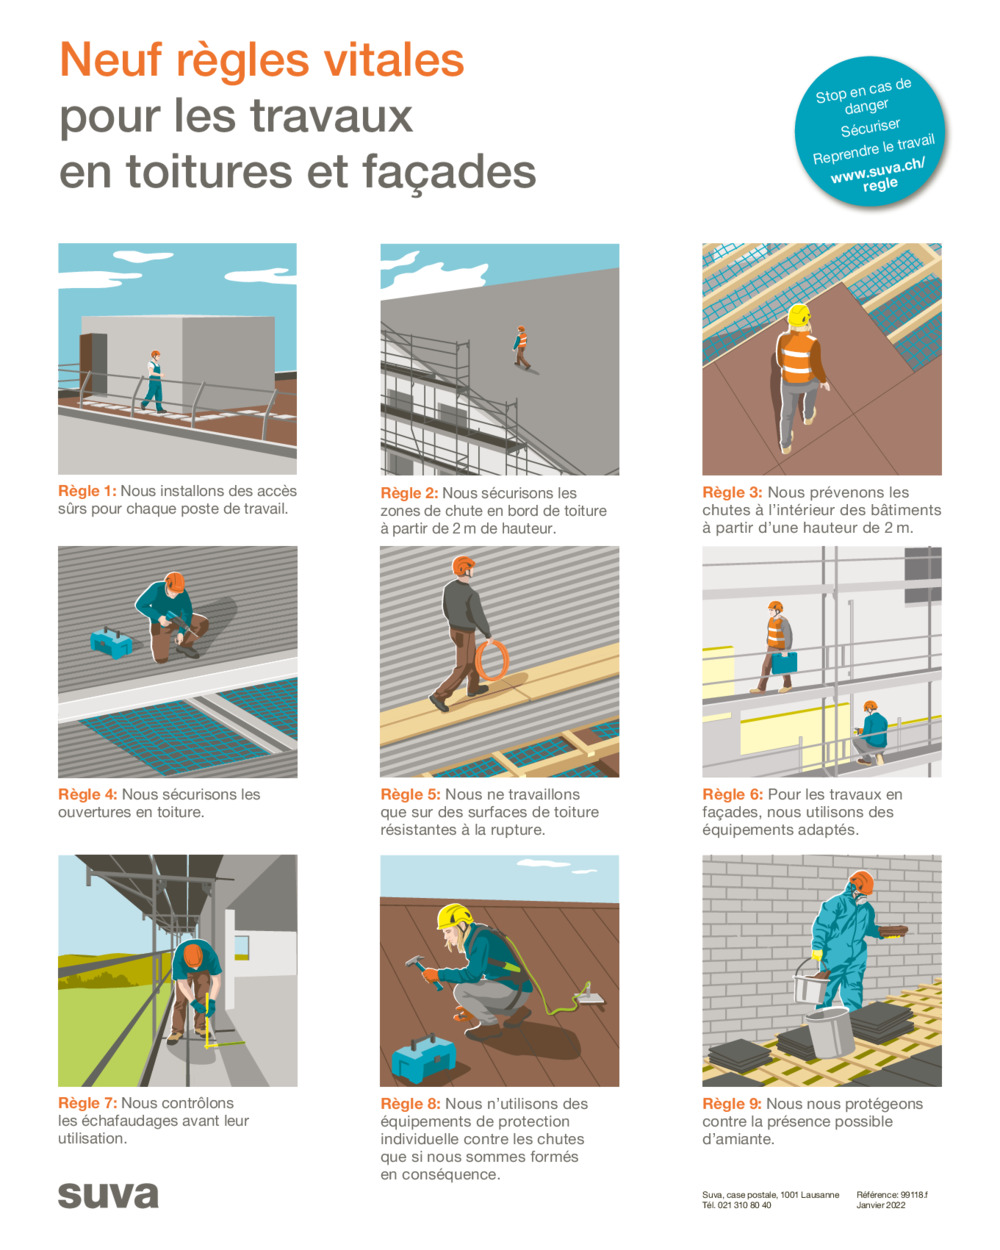 Affiche: Neuf règles vitales pour les travaux en toitures et façades